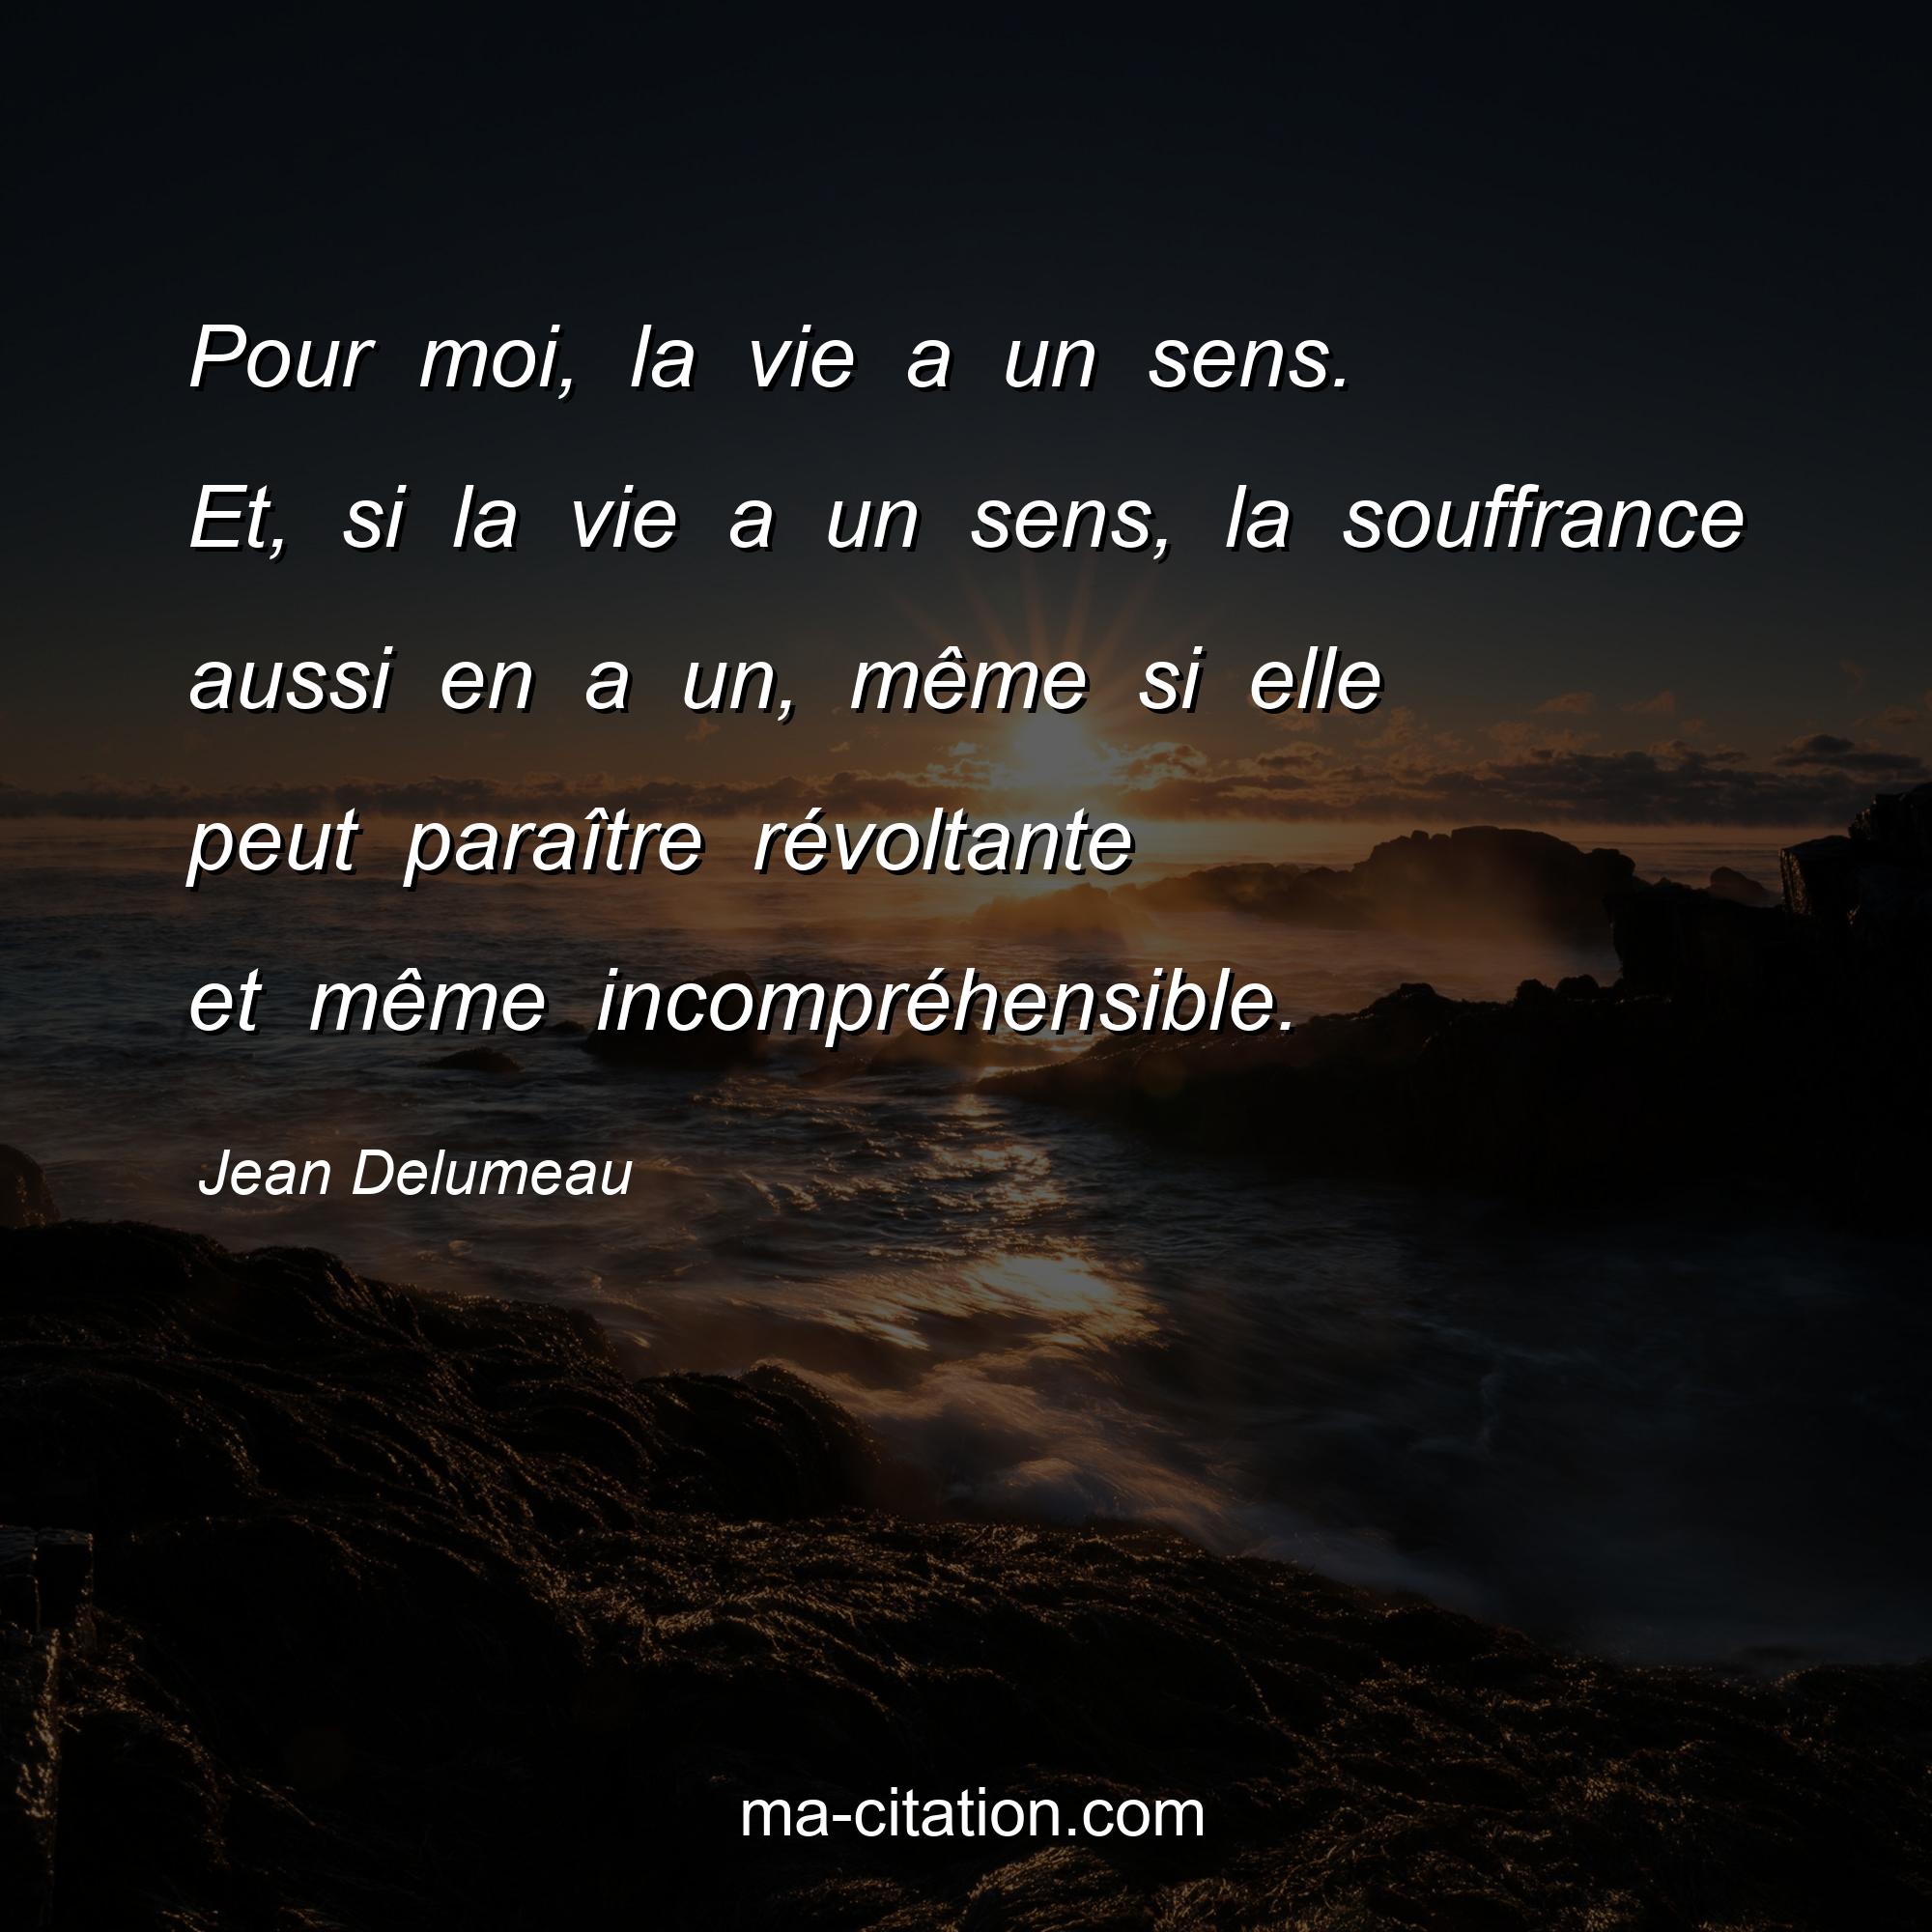 Jean Delumeau : Pour moi, la vie a un sens. Et, si la vie a un sens, la souffrance aussi en a un, même si elle peut paraître révoltante et même incompréhensible.